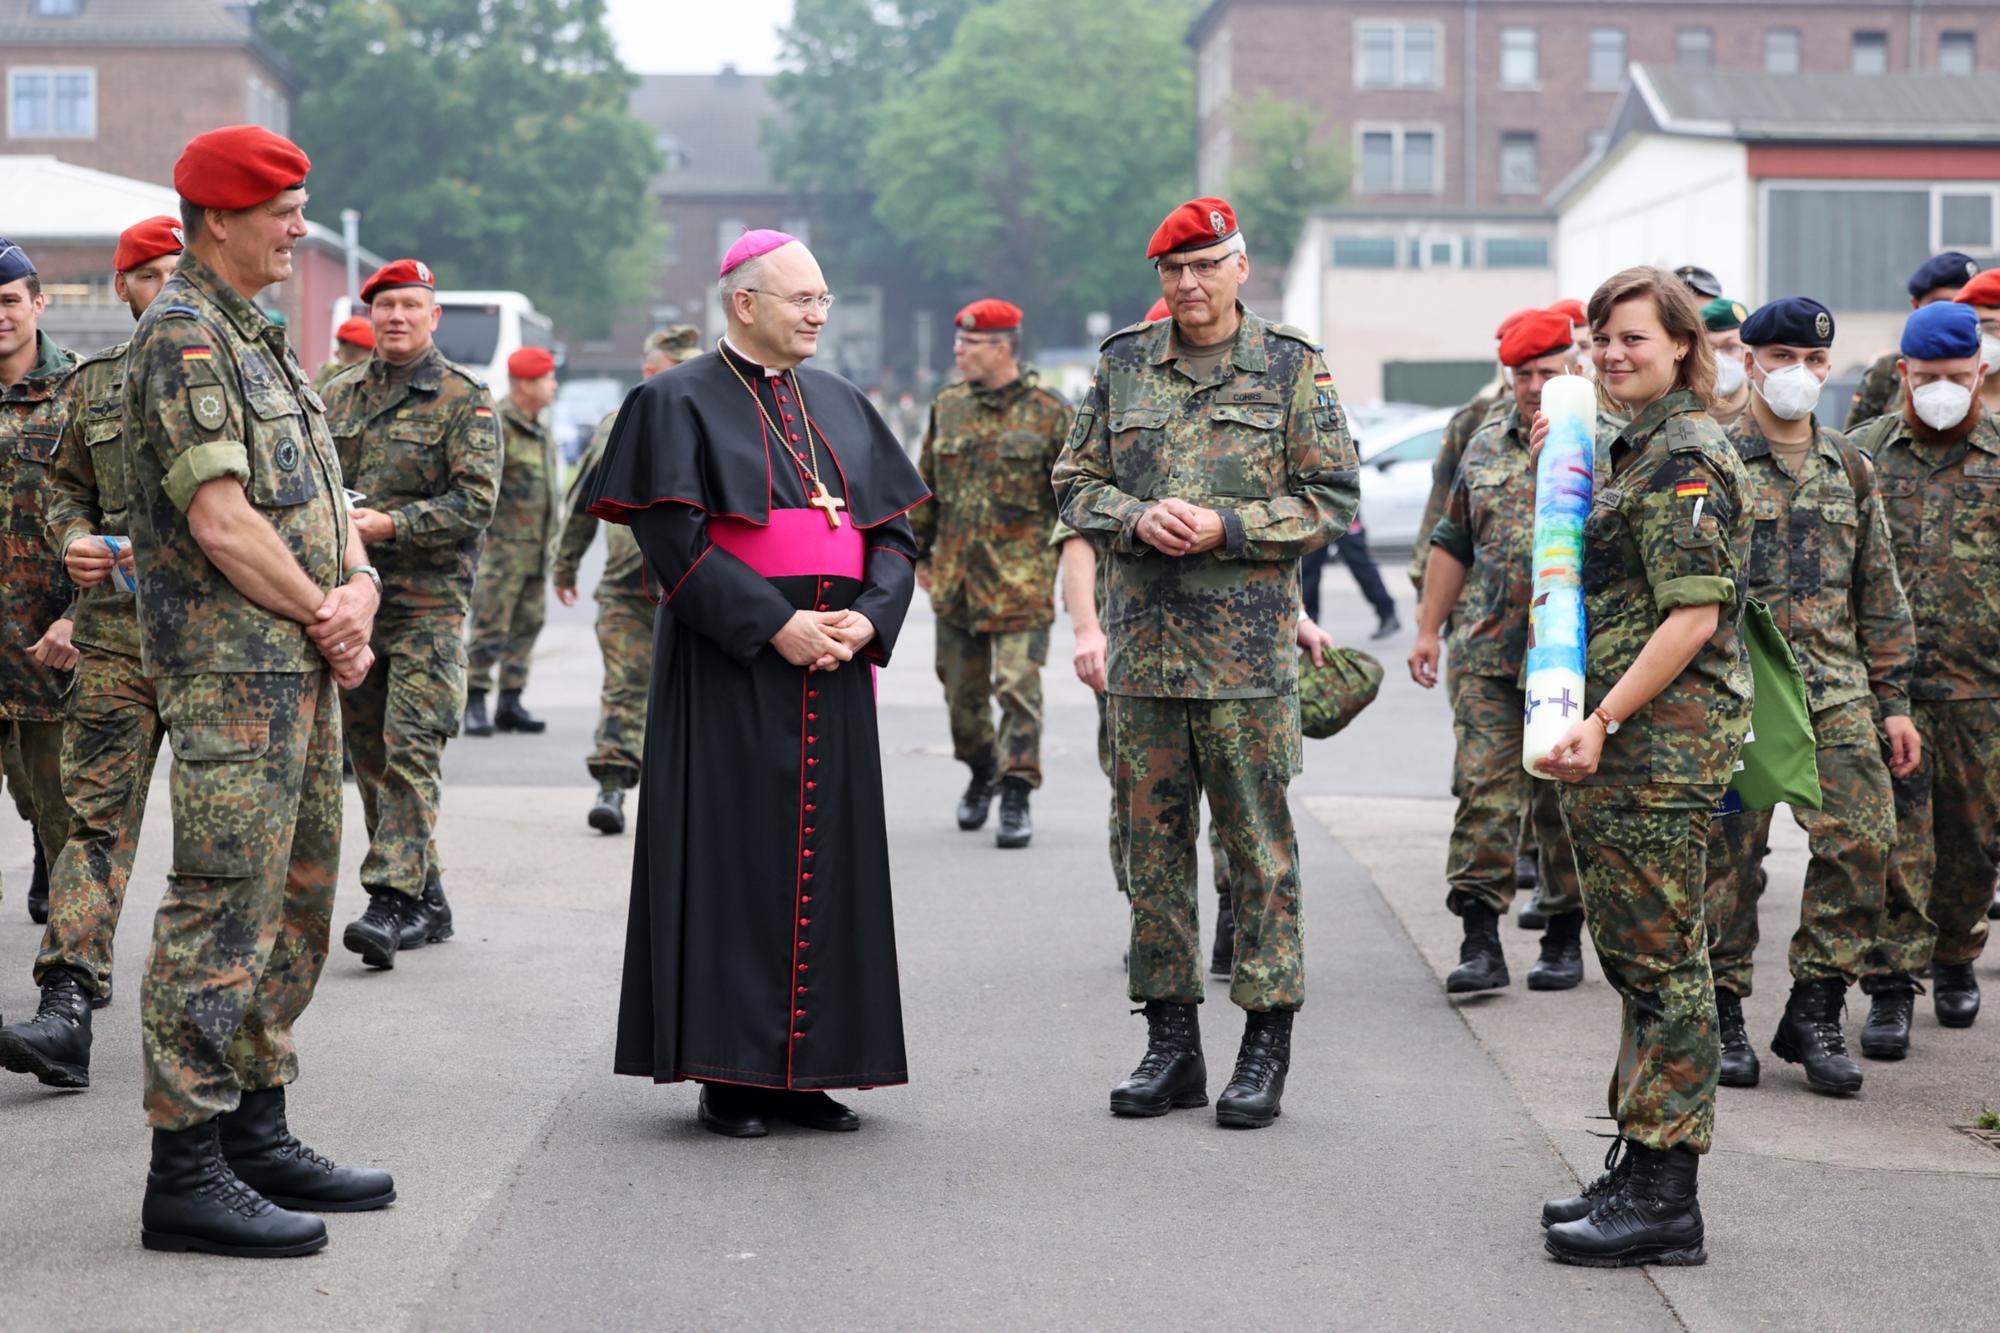 Friedensgottesdienst mit 300 Soldatinnen und Soldaten in der Lützow-Kaserne